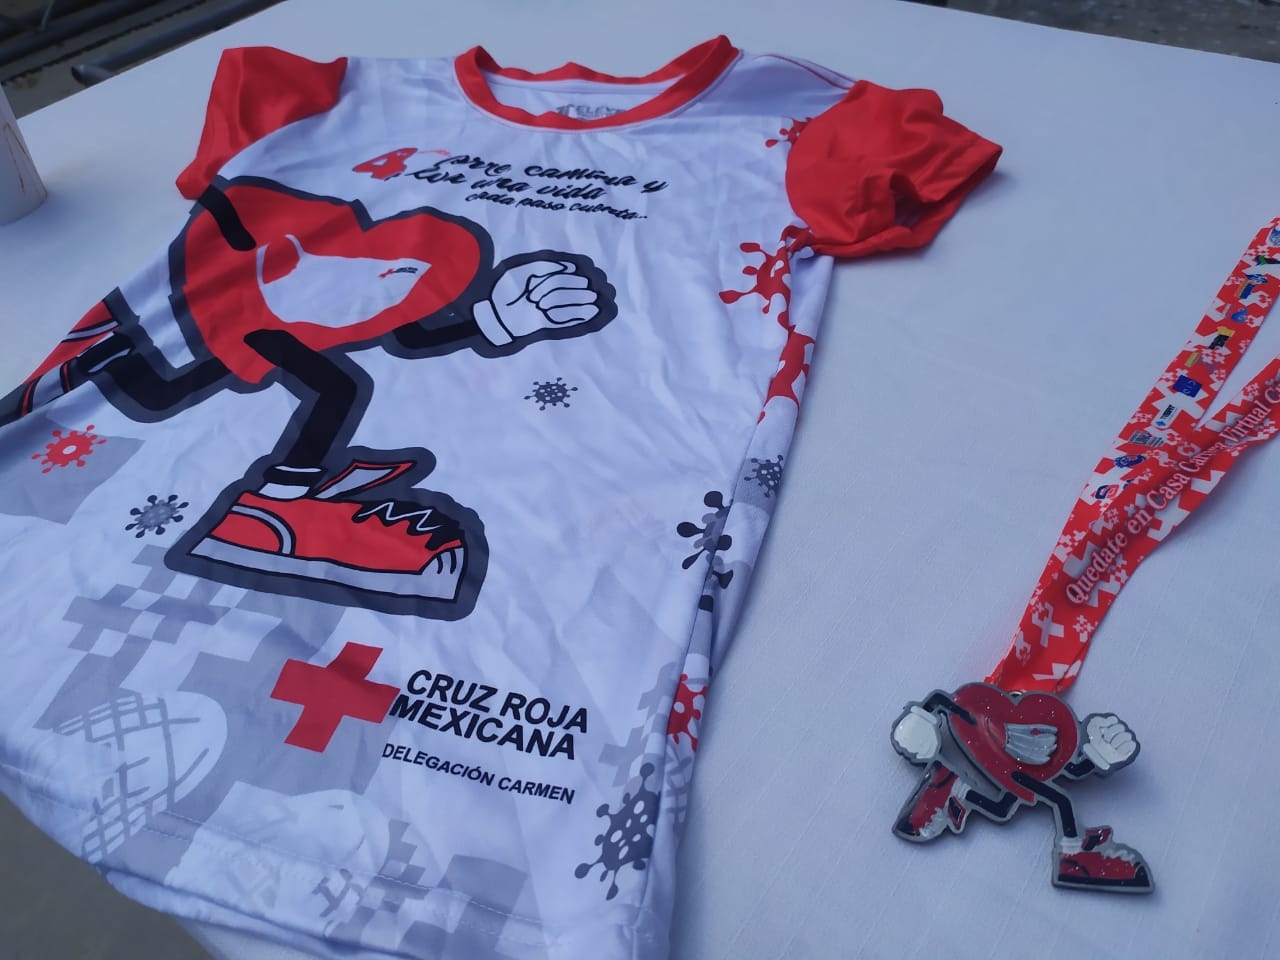 Cruz Roja organiza carrera virtual en Ciudad del Carmen